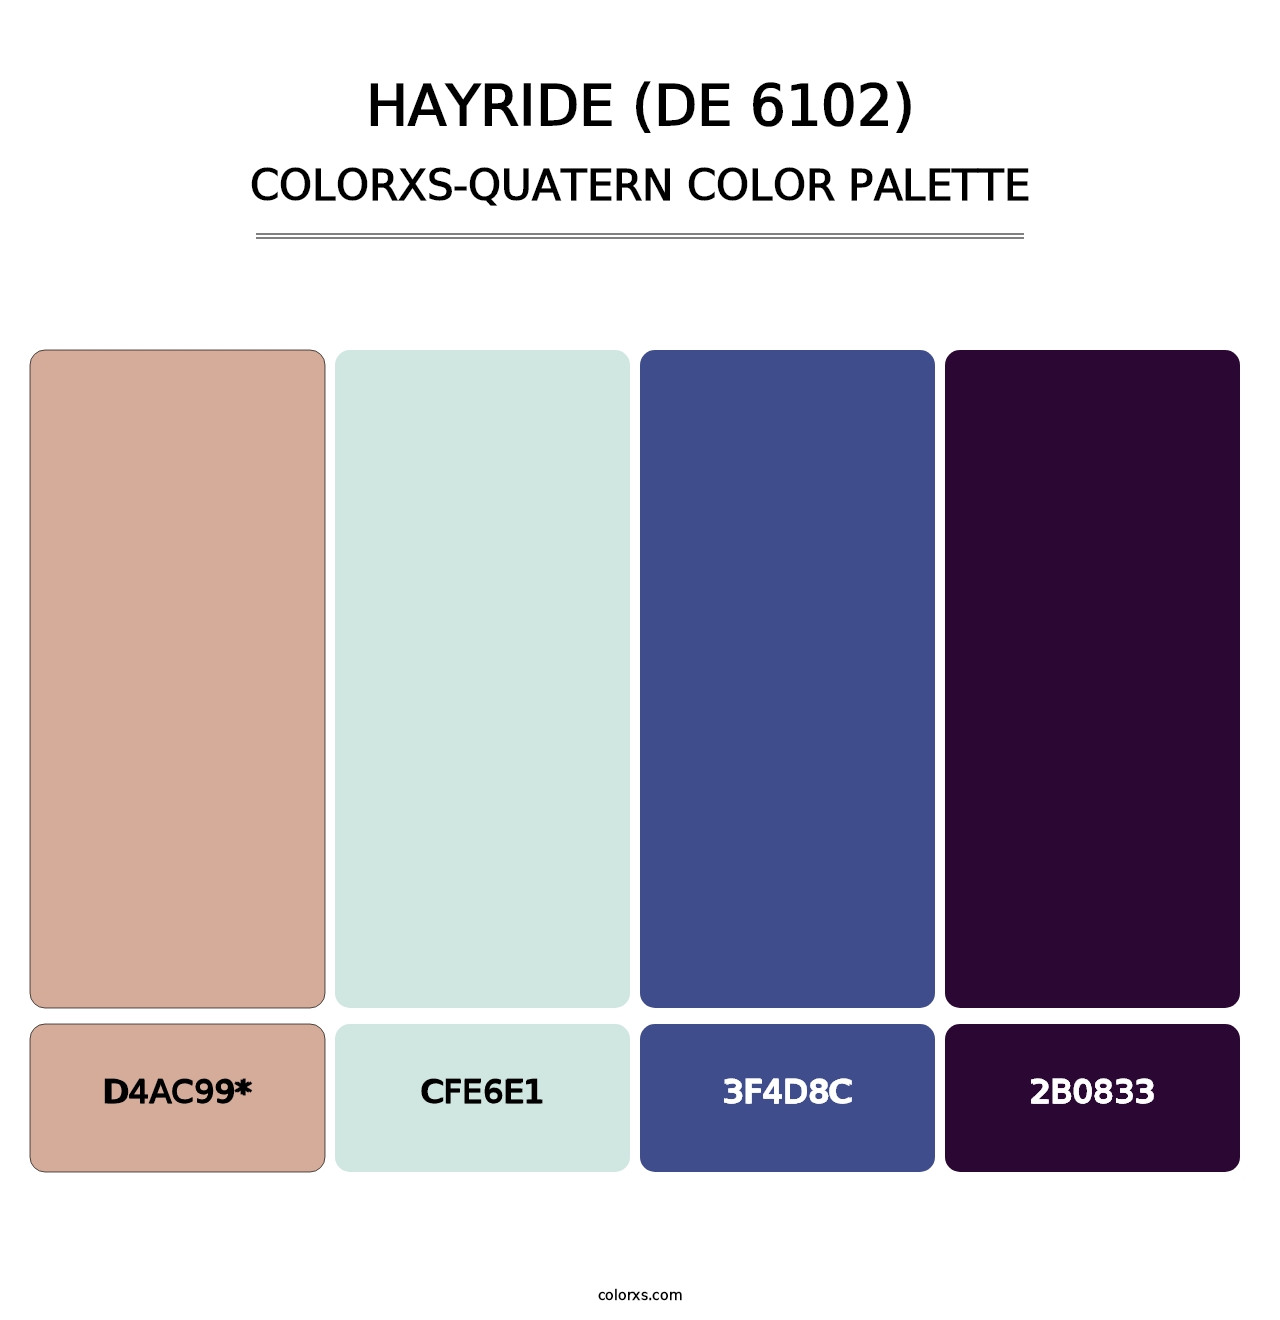 Hayride (DE 6102) - Colorxs Quatern Palette